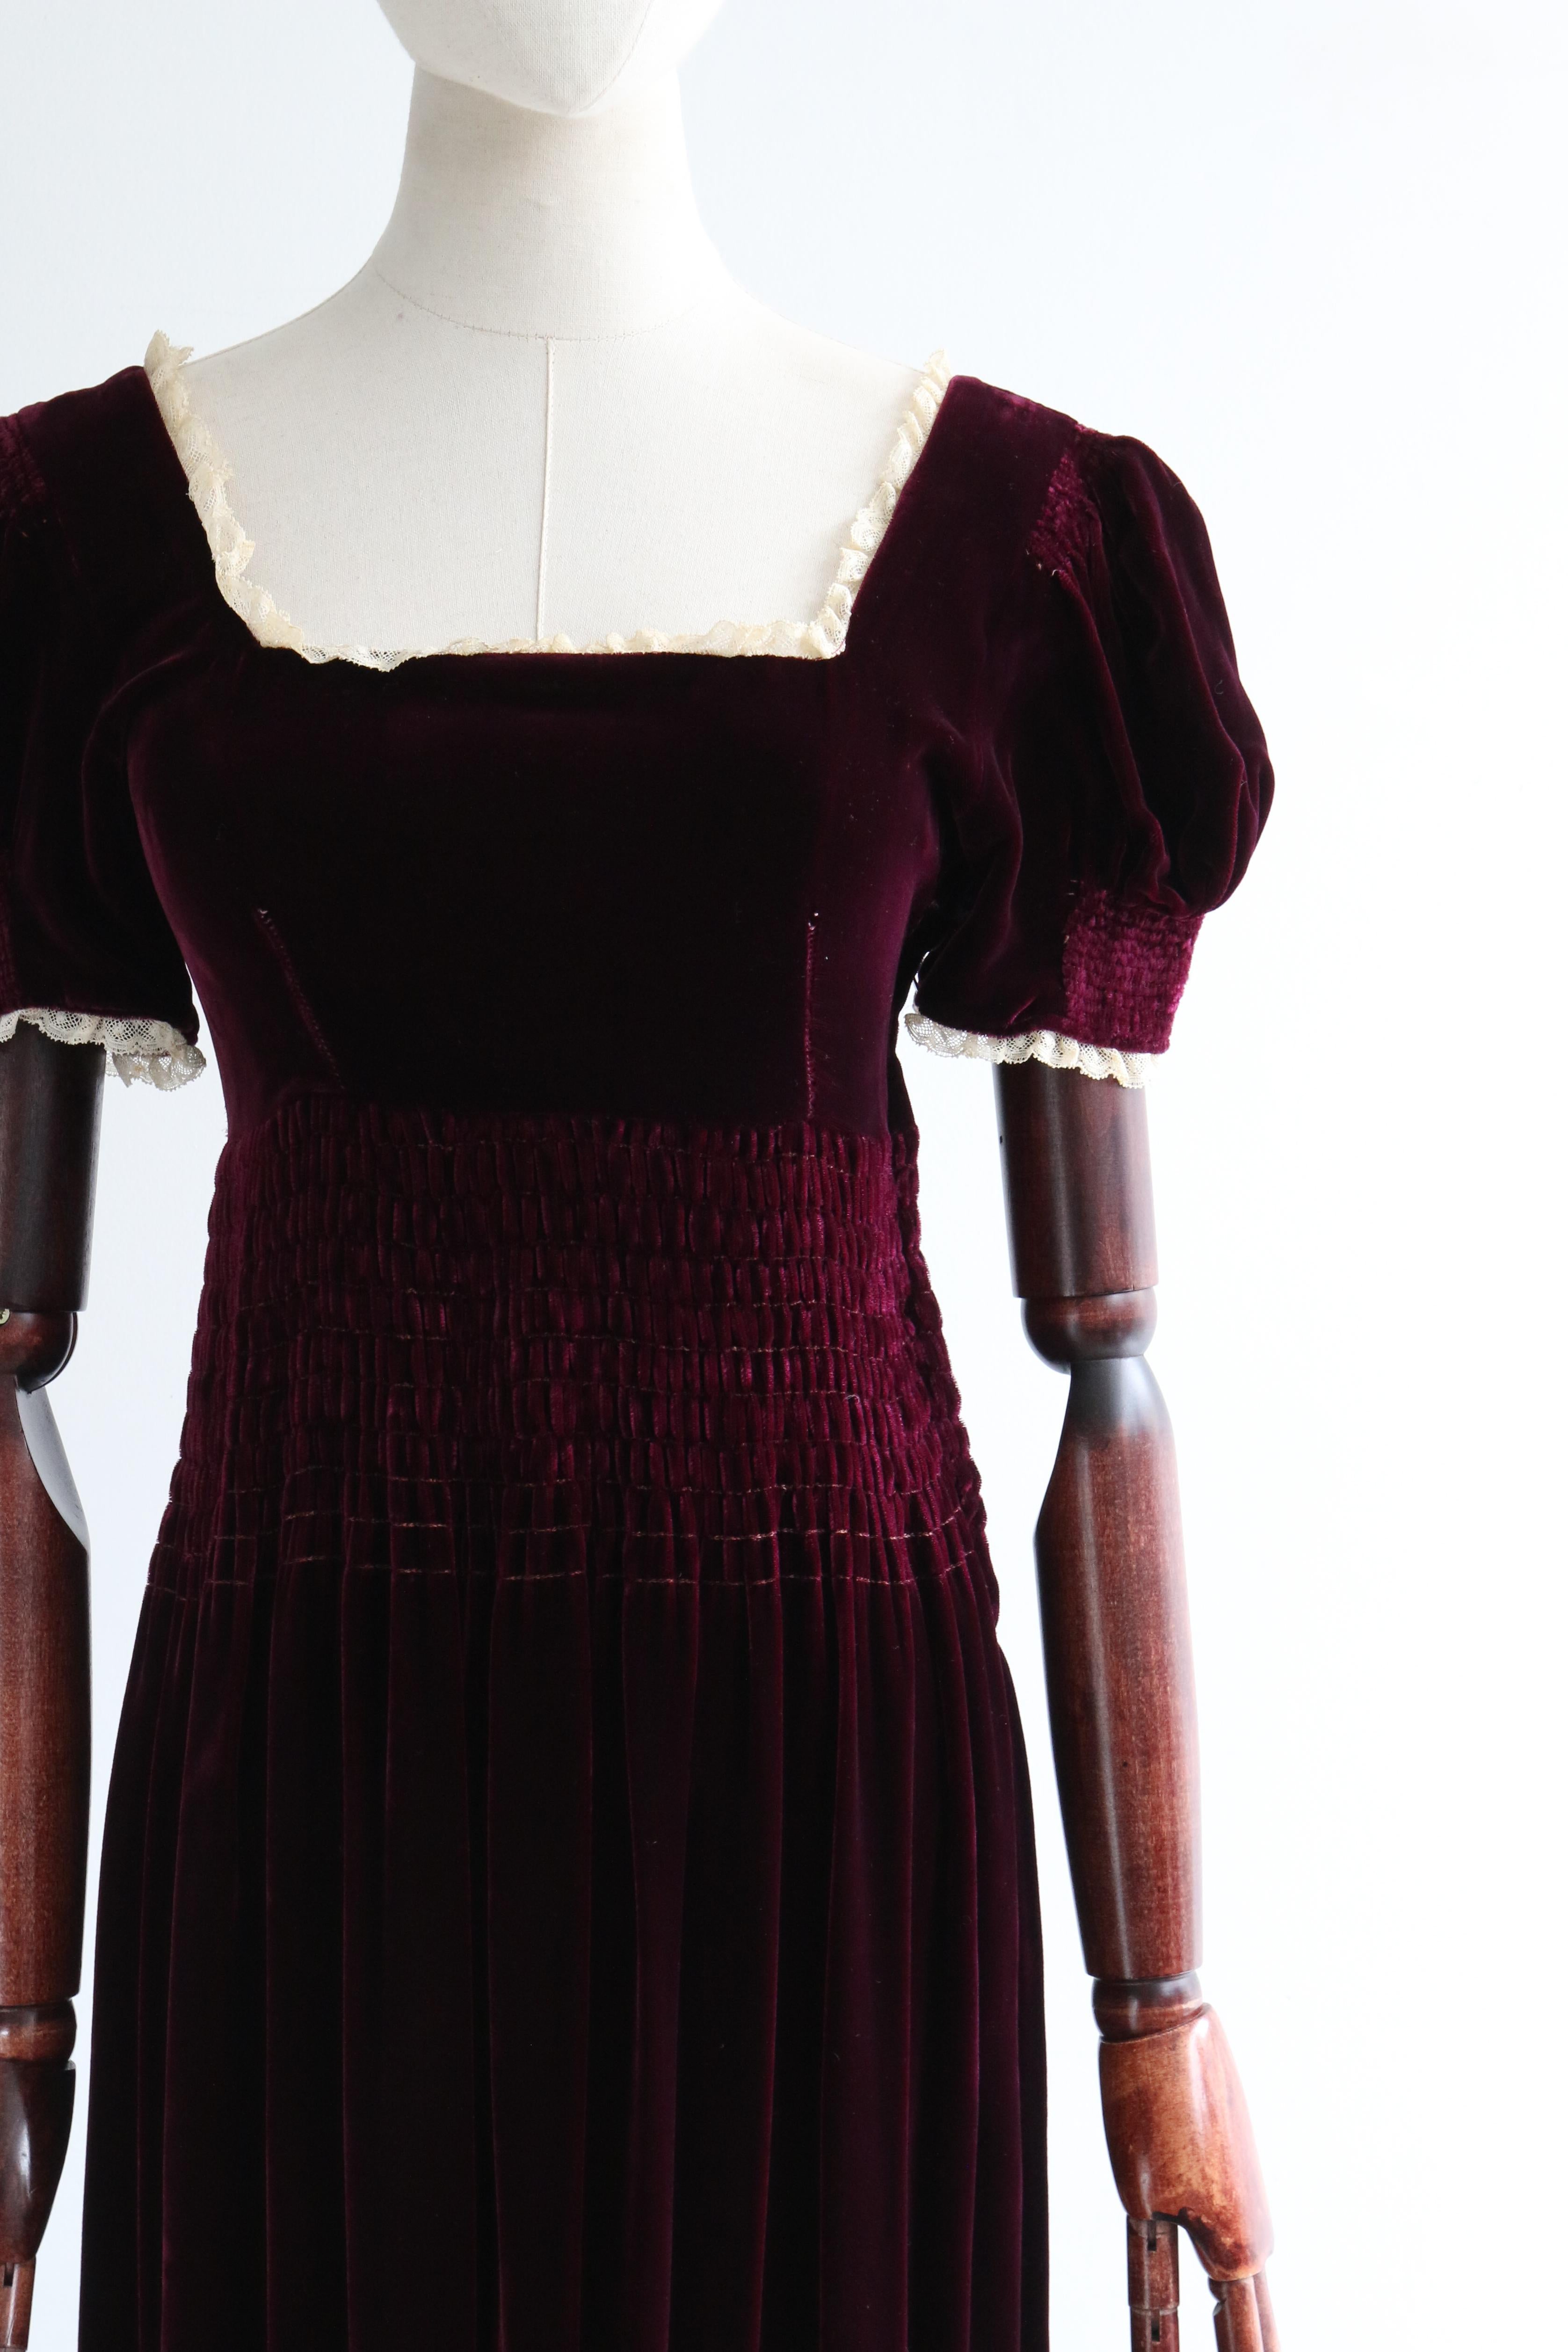 Dieses atemberaubende Kleid aus burgunderrotem Seidensamt aus den 1930er Jahren mit cremefarbenen Spitzendetails ist genau das richtige Stück für Ihre Übergangsgarderobe. 

Der runde Halsausschnitt ist mit einer Borte aus cremefarbener Spitze